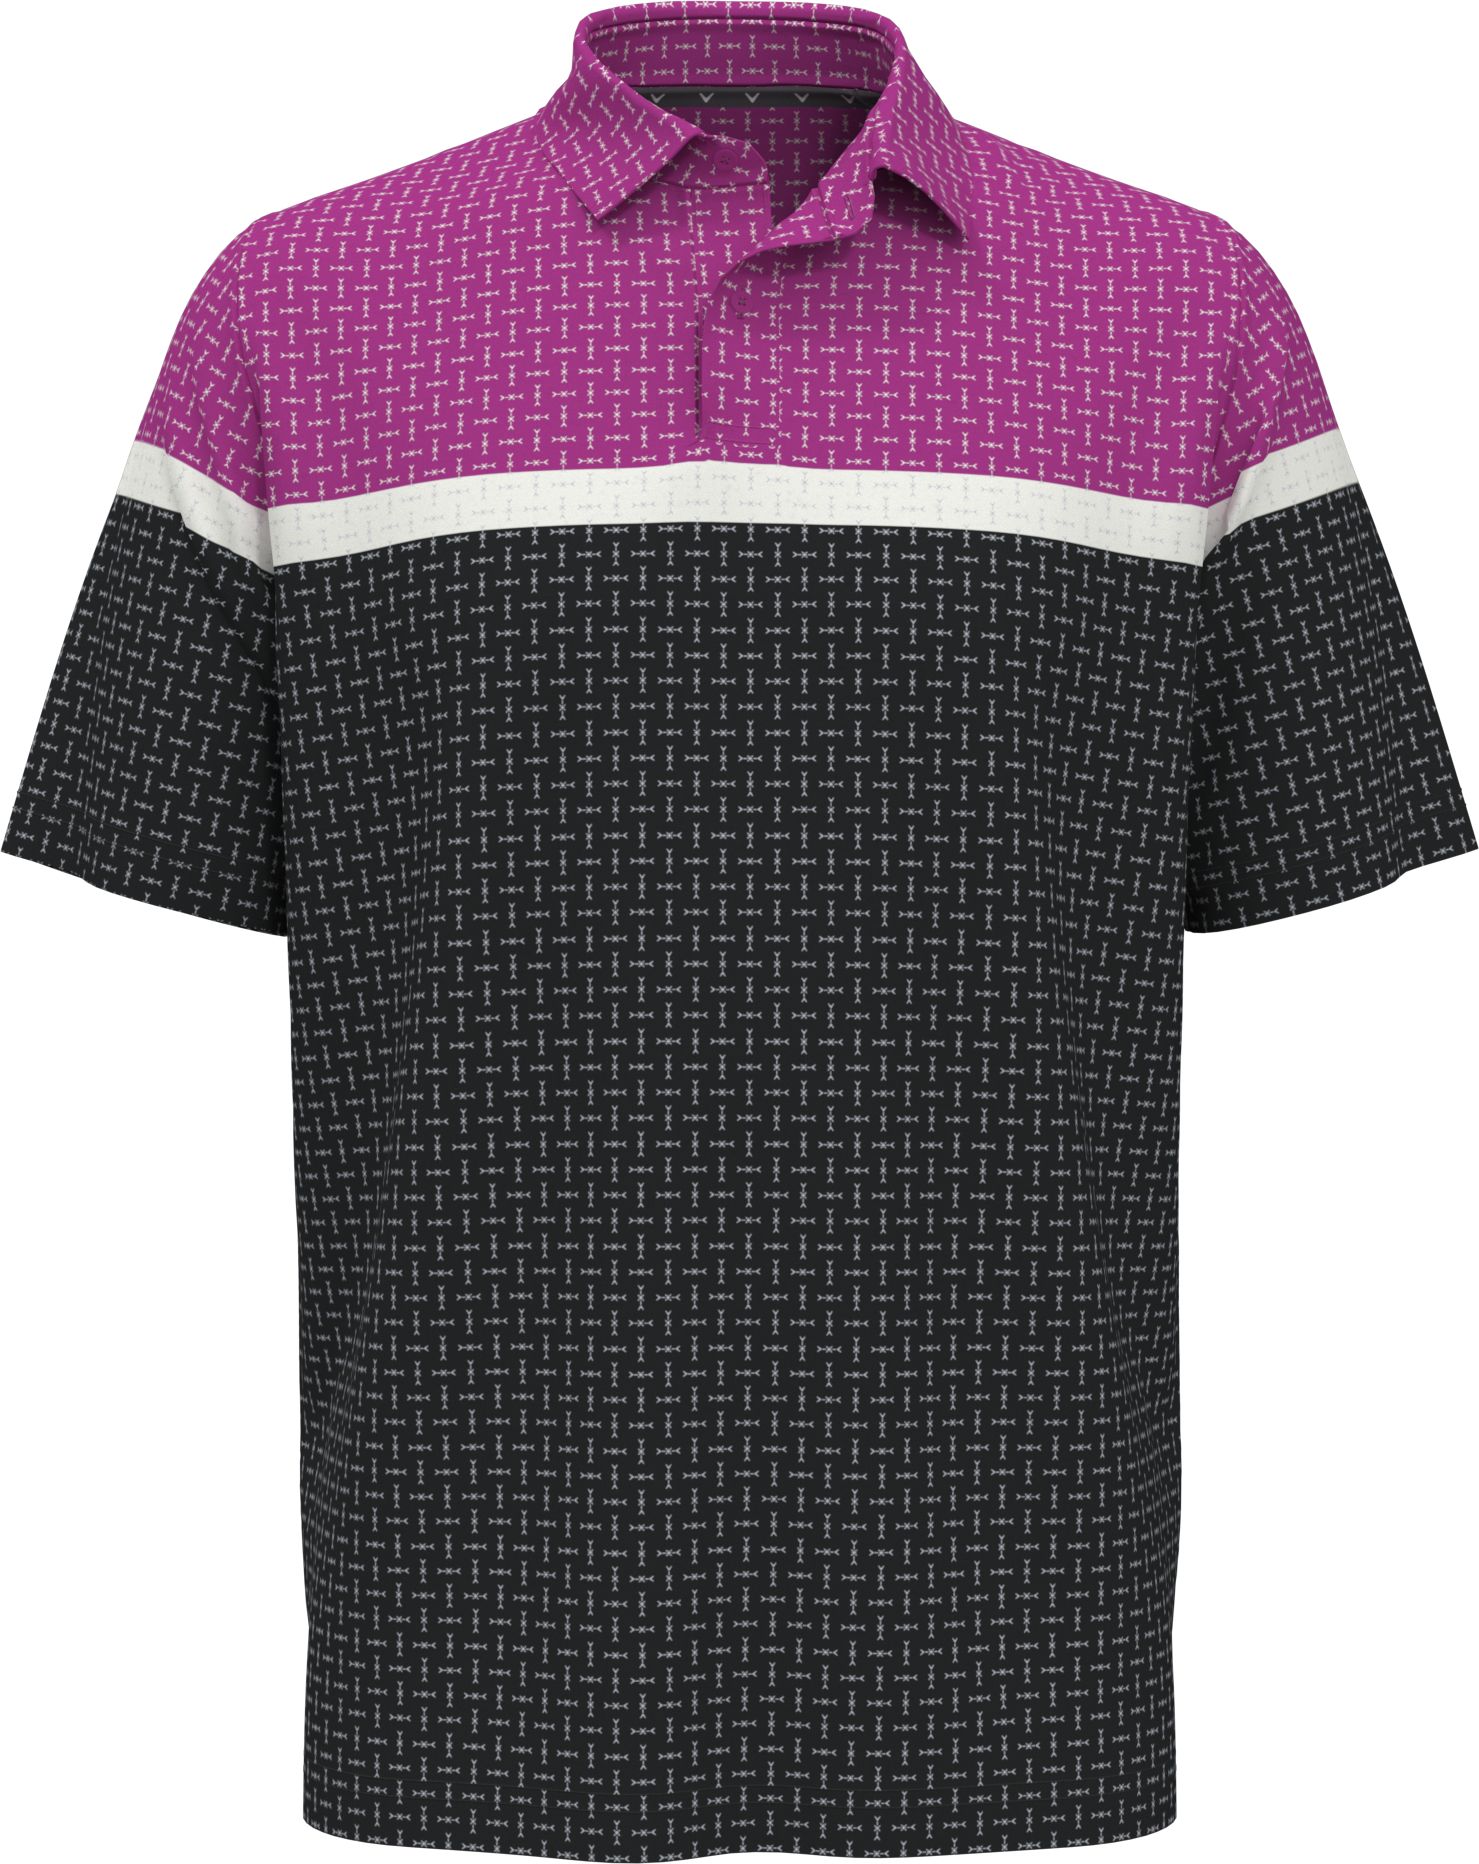 Levně Callaway Classic Geo Print pánské golfové triko, fialové/tmavě šedé